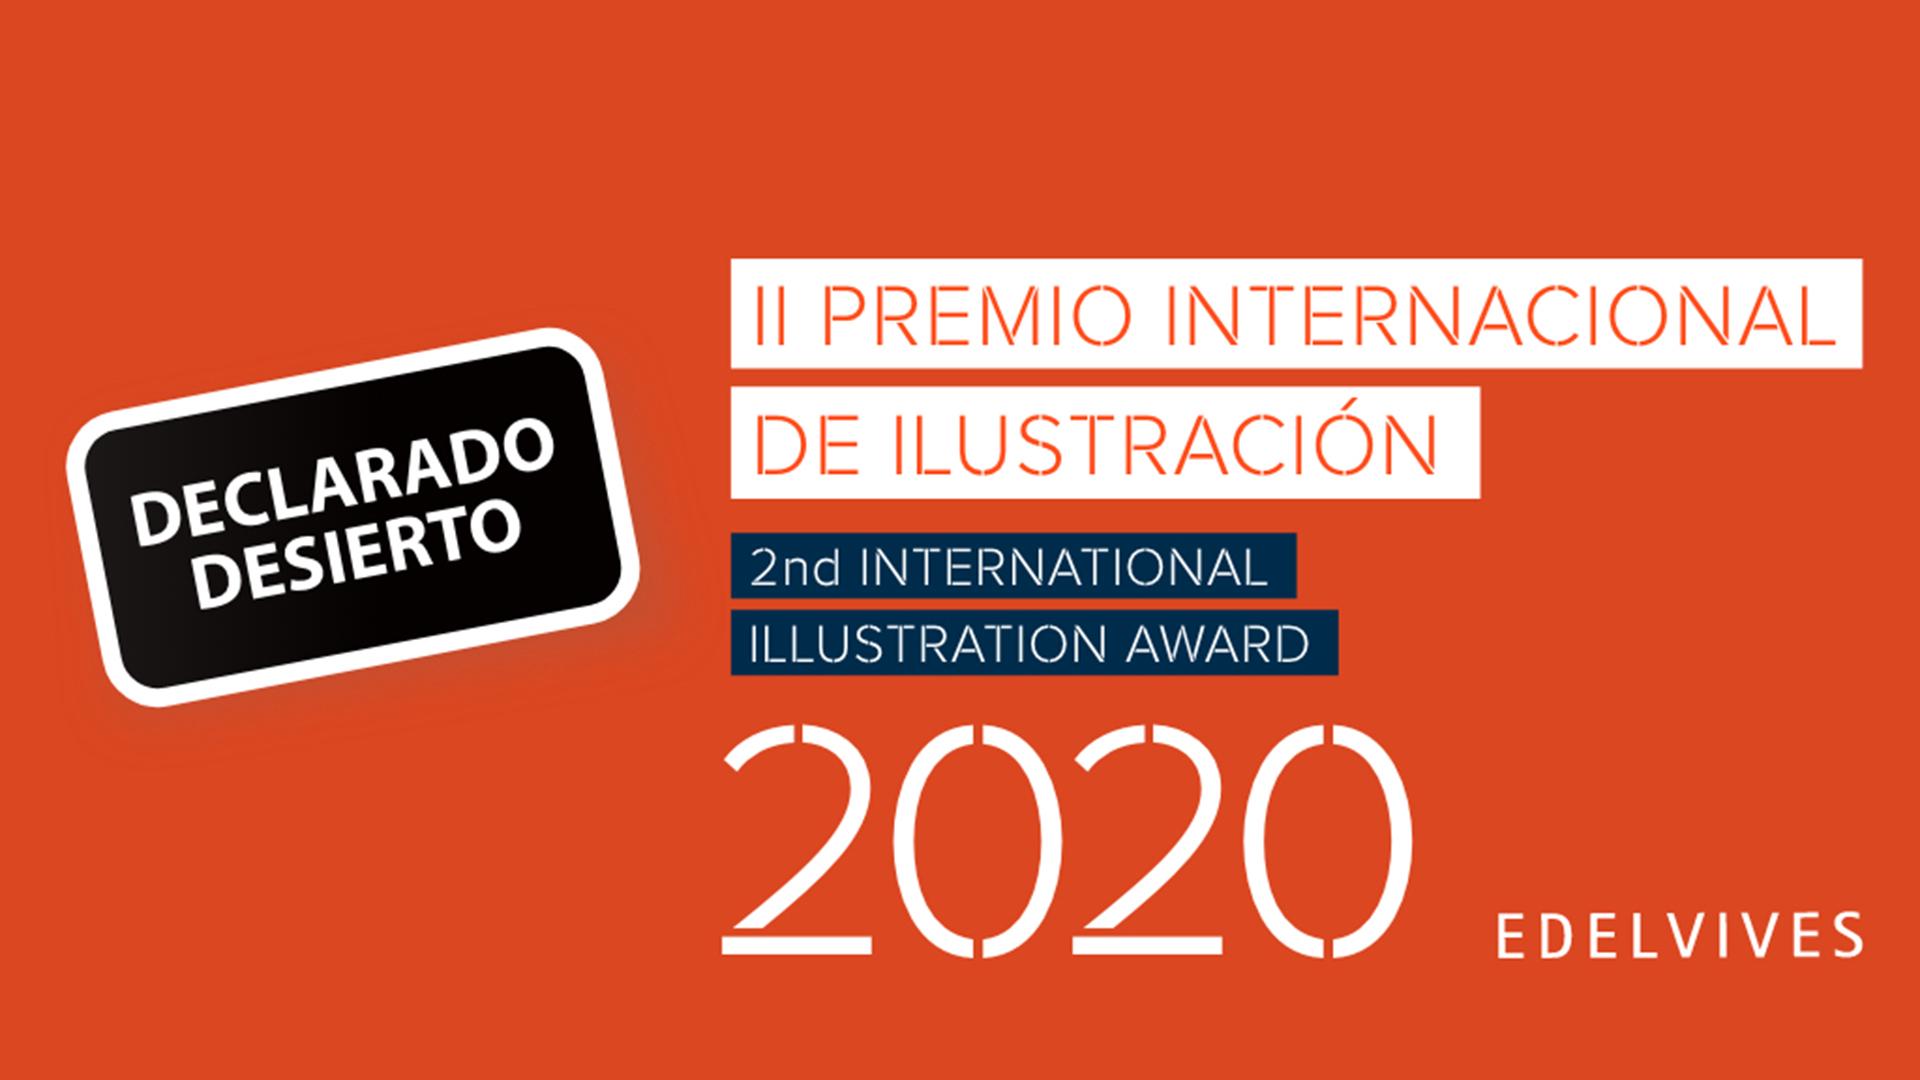 Edelvives declara desierto su Premio Internacional de Ilustración 2020